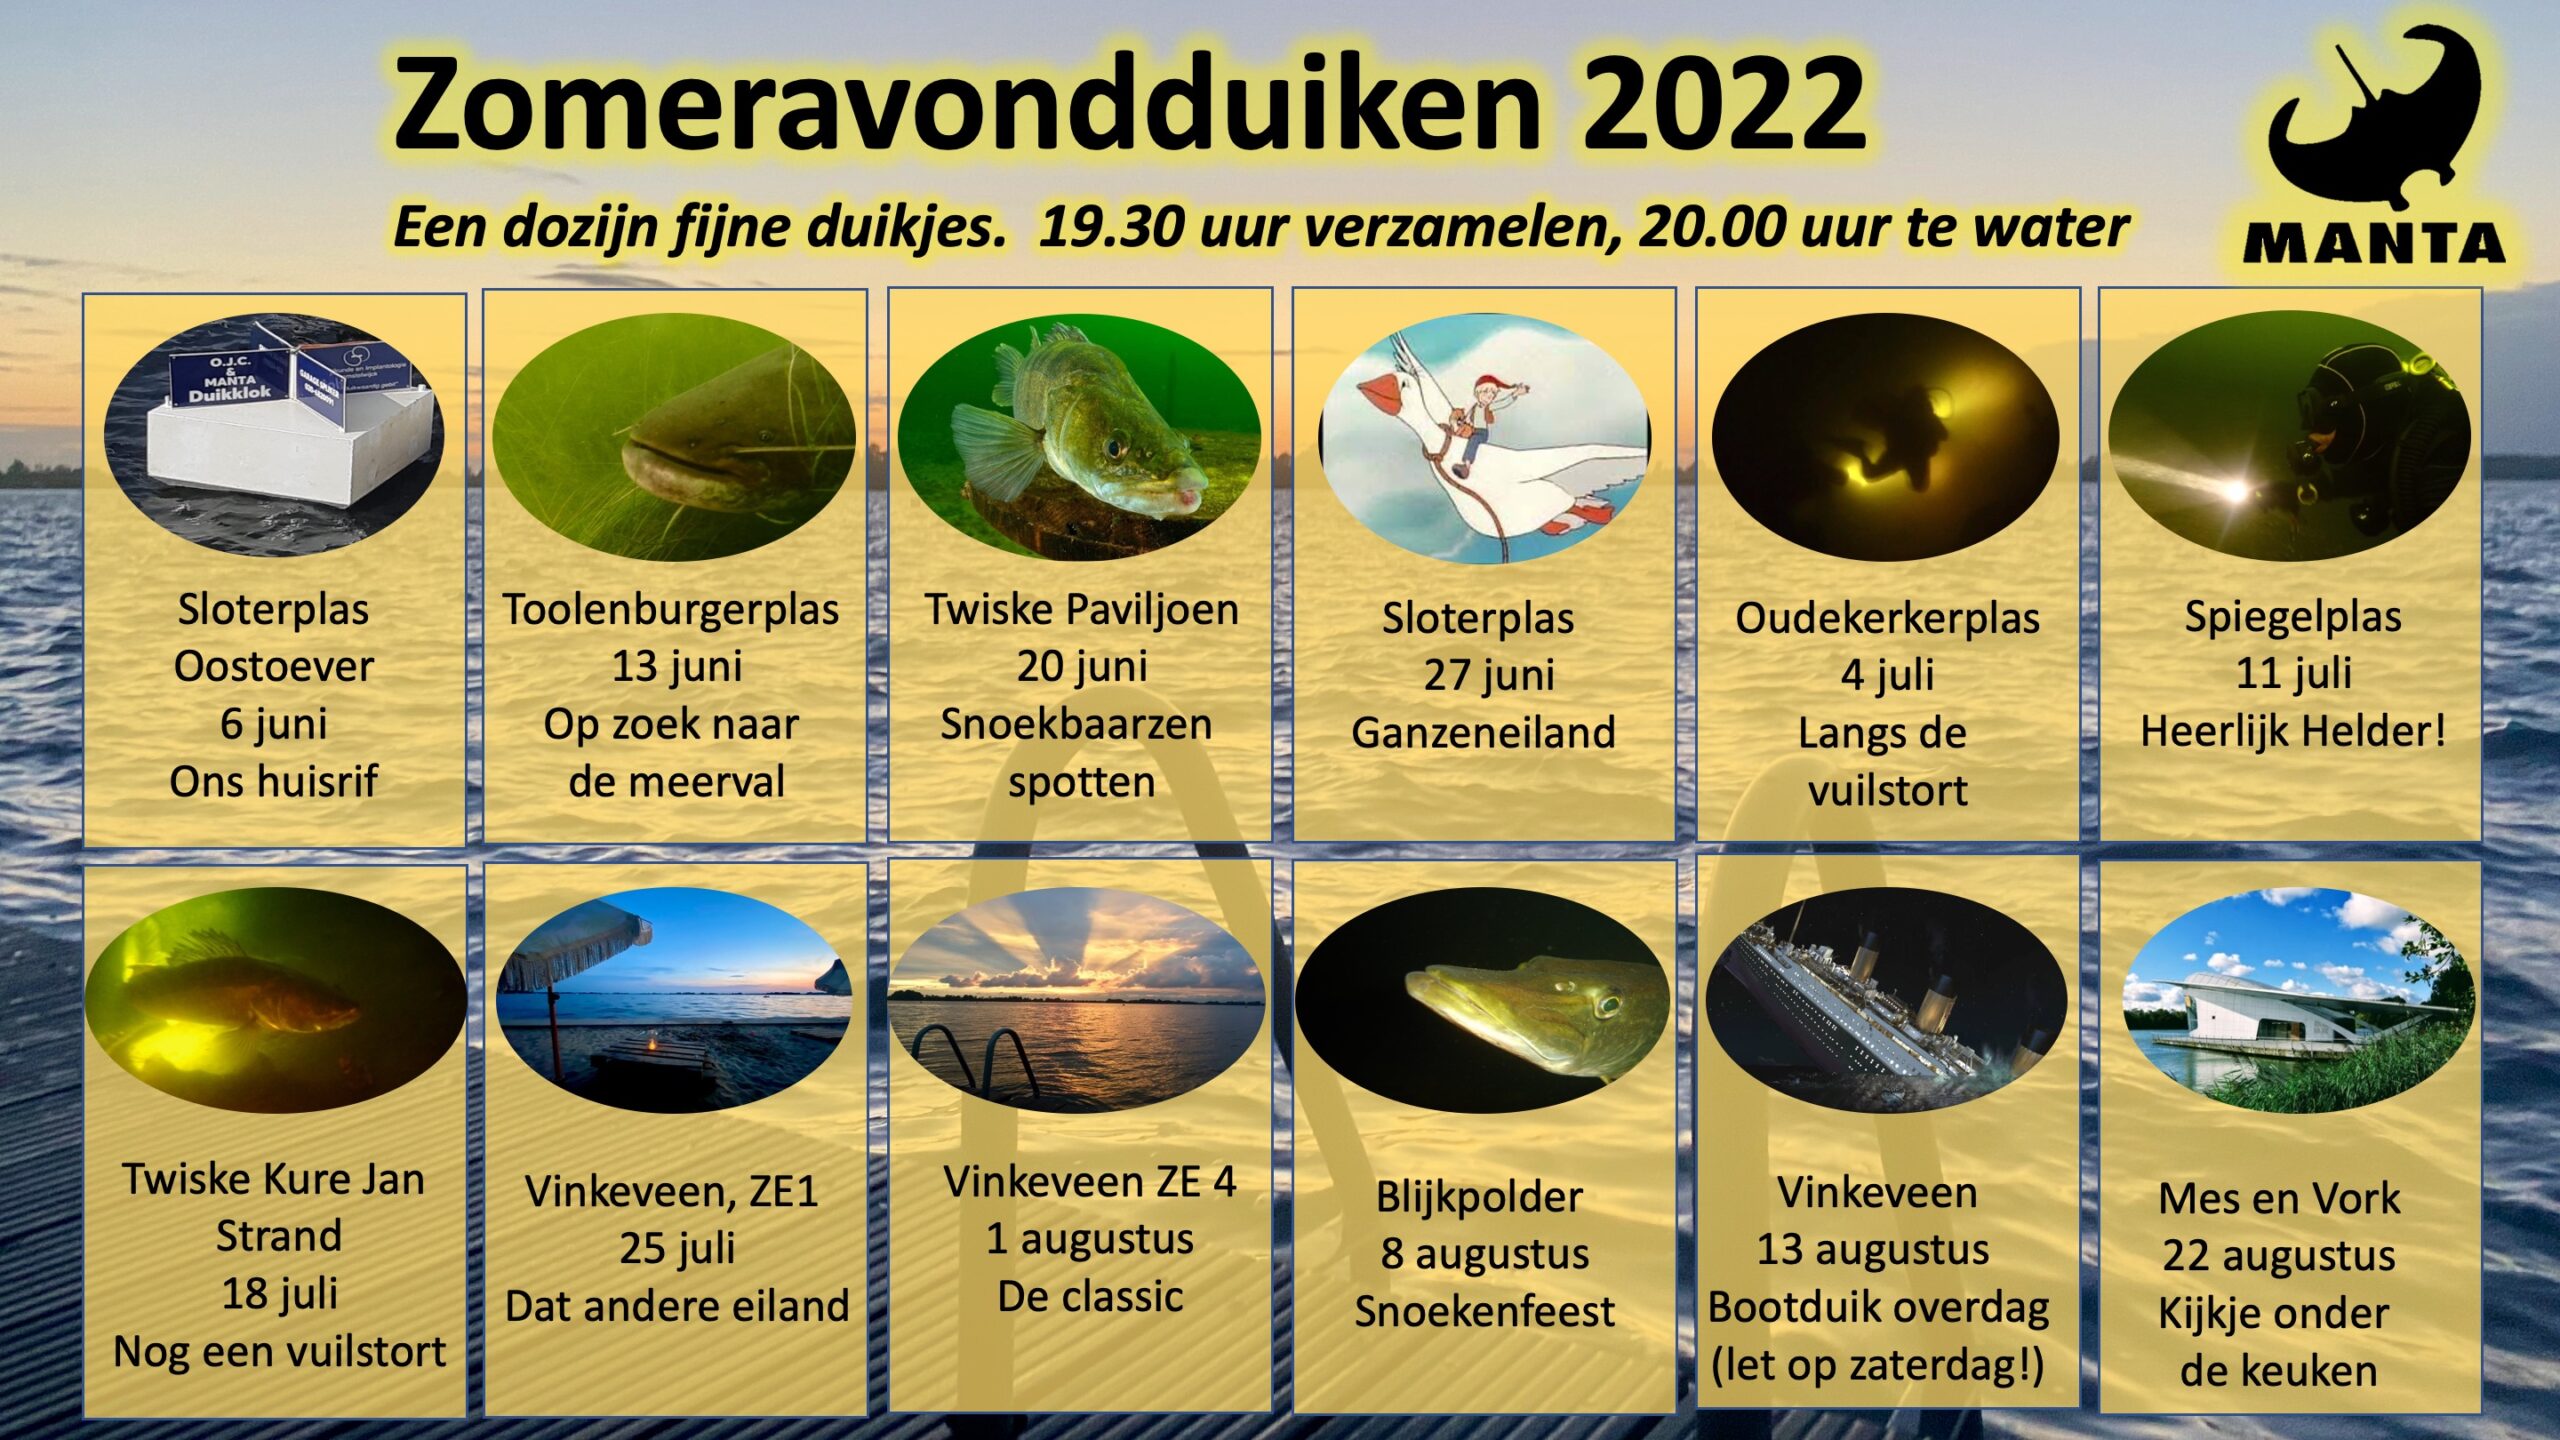 Zomeravondduiken 2022 - Spiegelplas